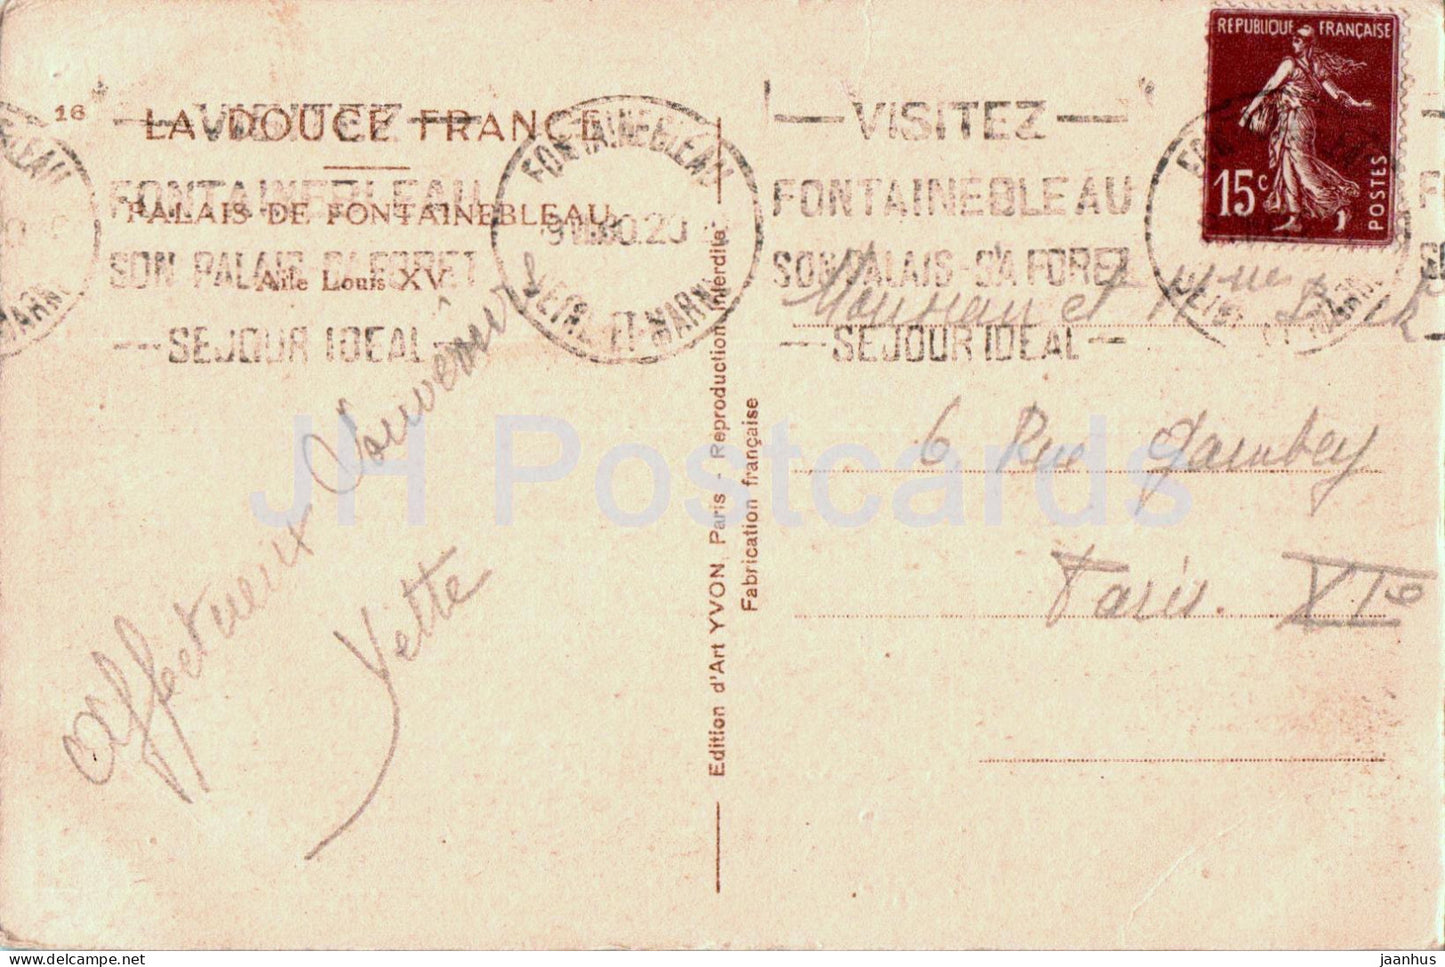 Palais de Fontainebleau - Aile Louis XV - 16 - alte Postkarte - 1930 - Frankreich - gebraucht 